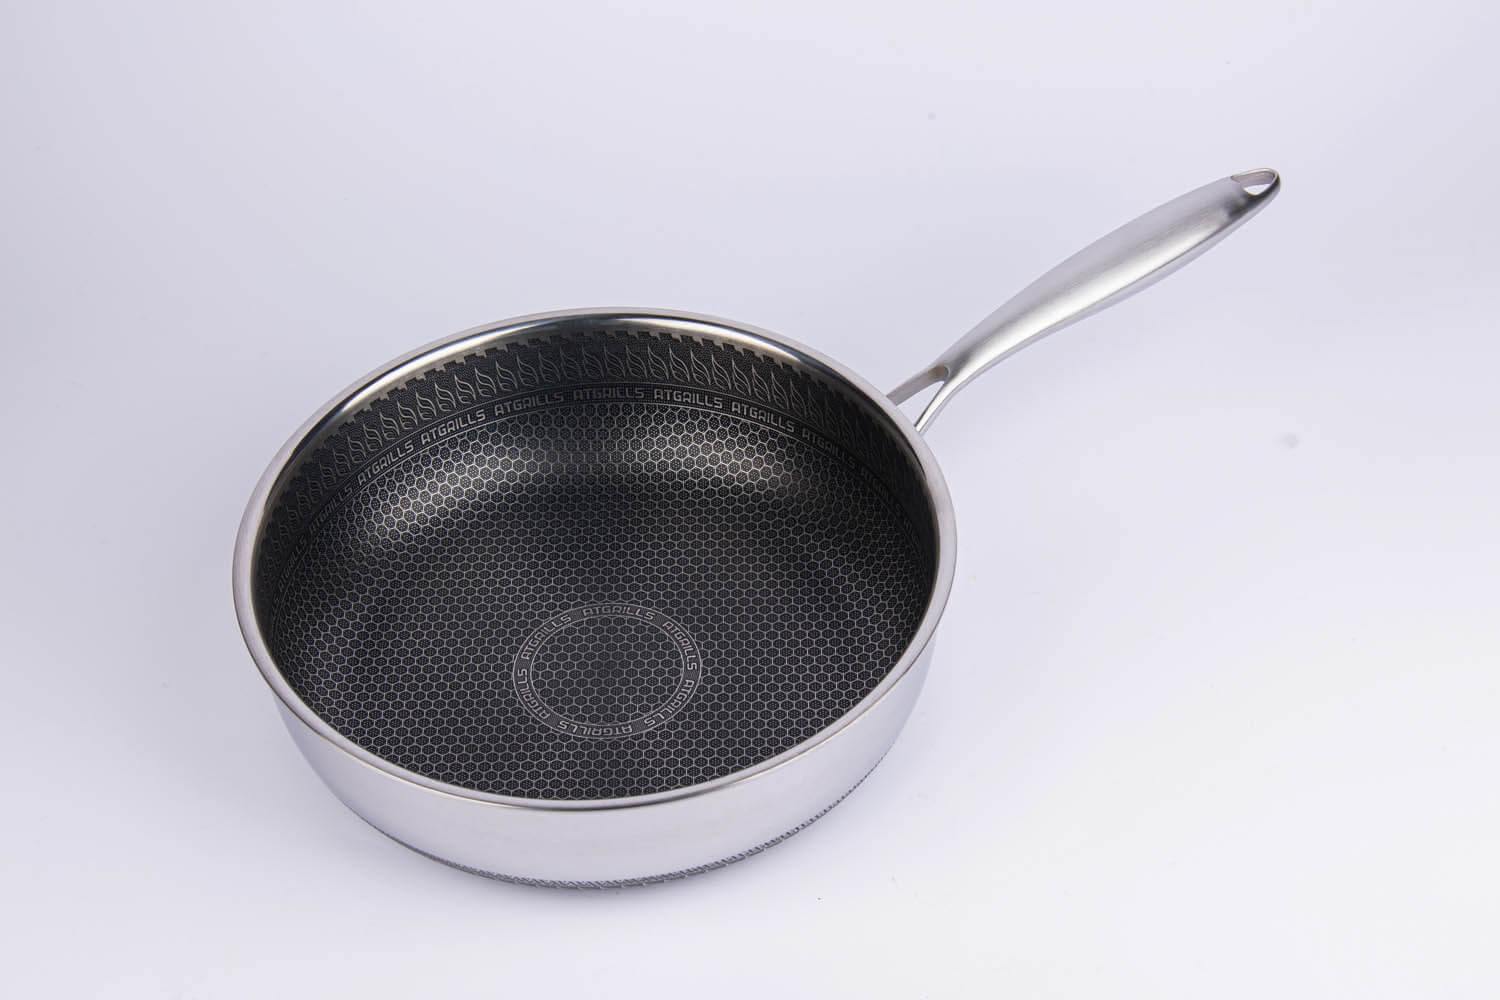 Atgrills deep frying pan